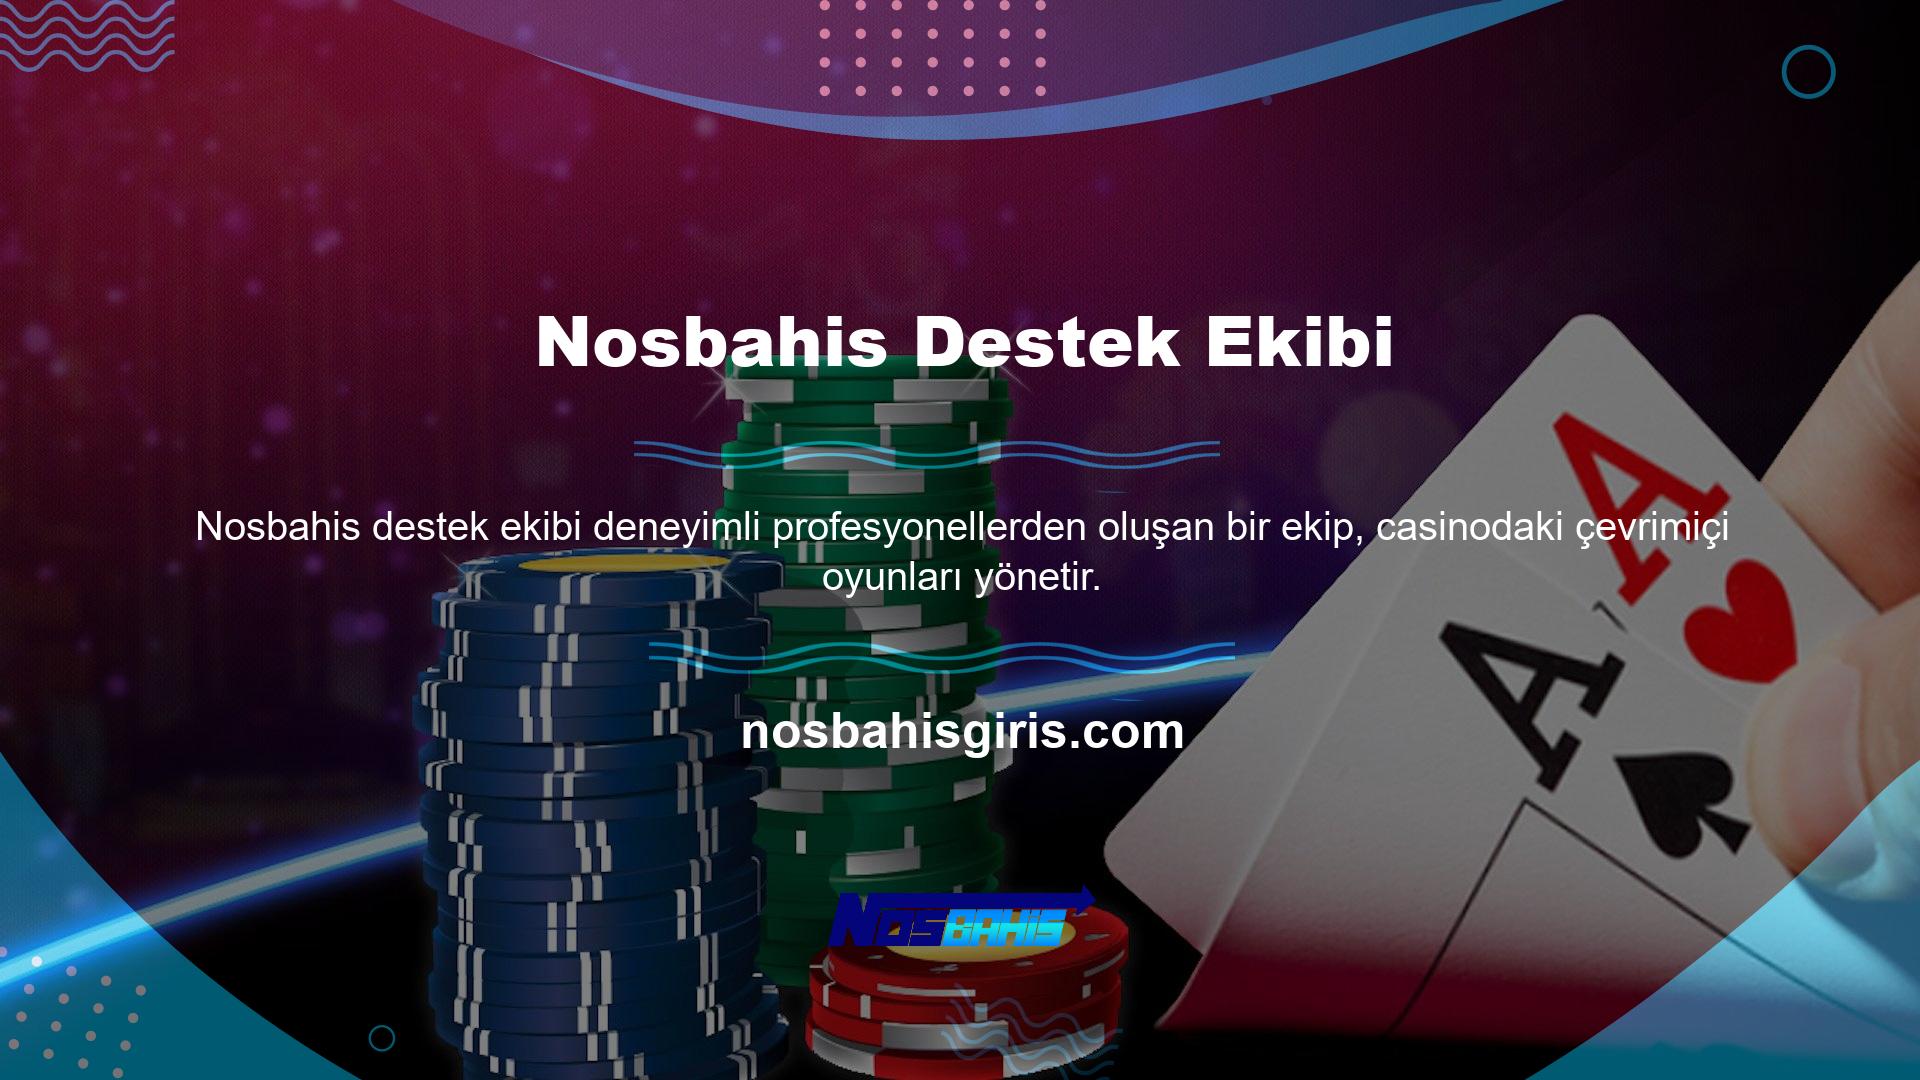 Türk oyuncuların ilgisini çeken en yeni bahis sitelerinden biri olan Nosbahis Bahis Deposito, yüksek faiz oranlarına ve cömert bonus tekliflerine sahiptir